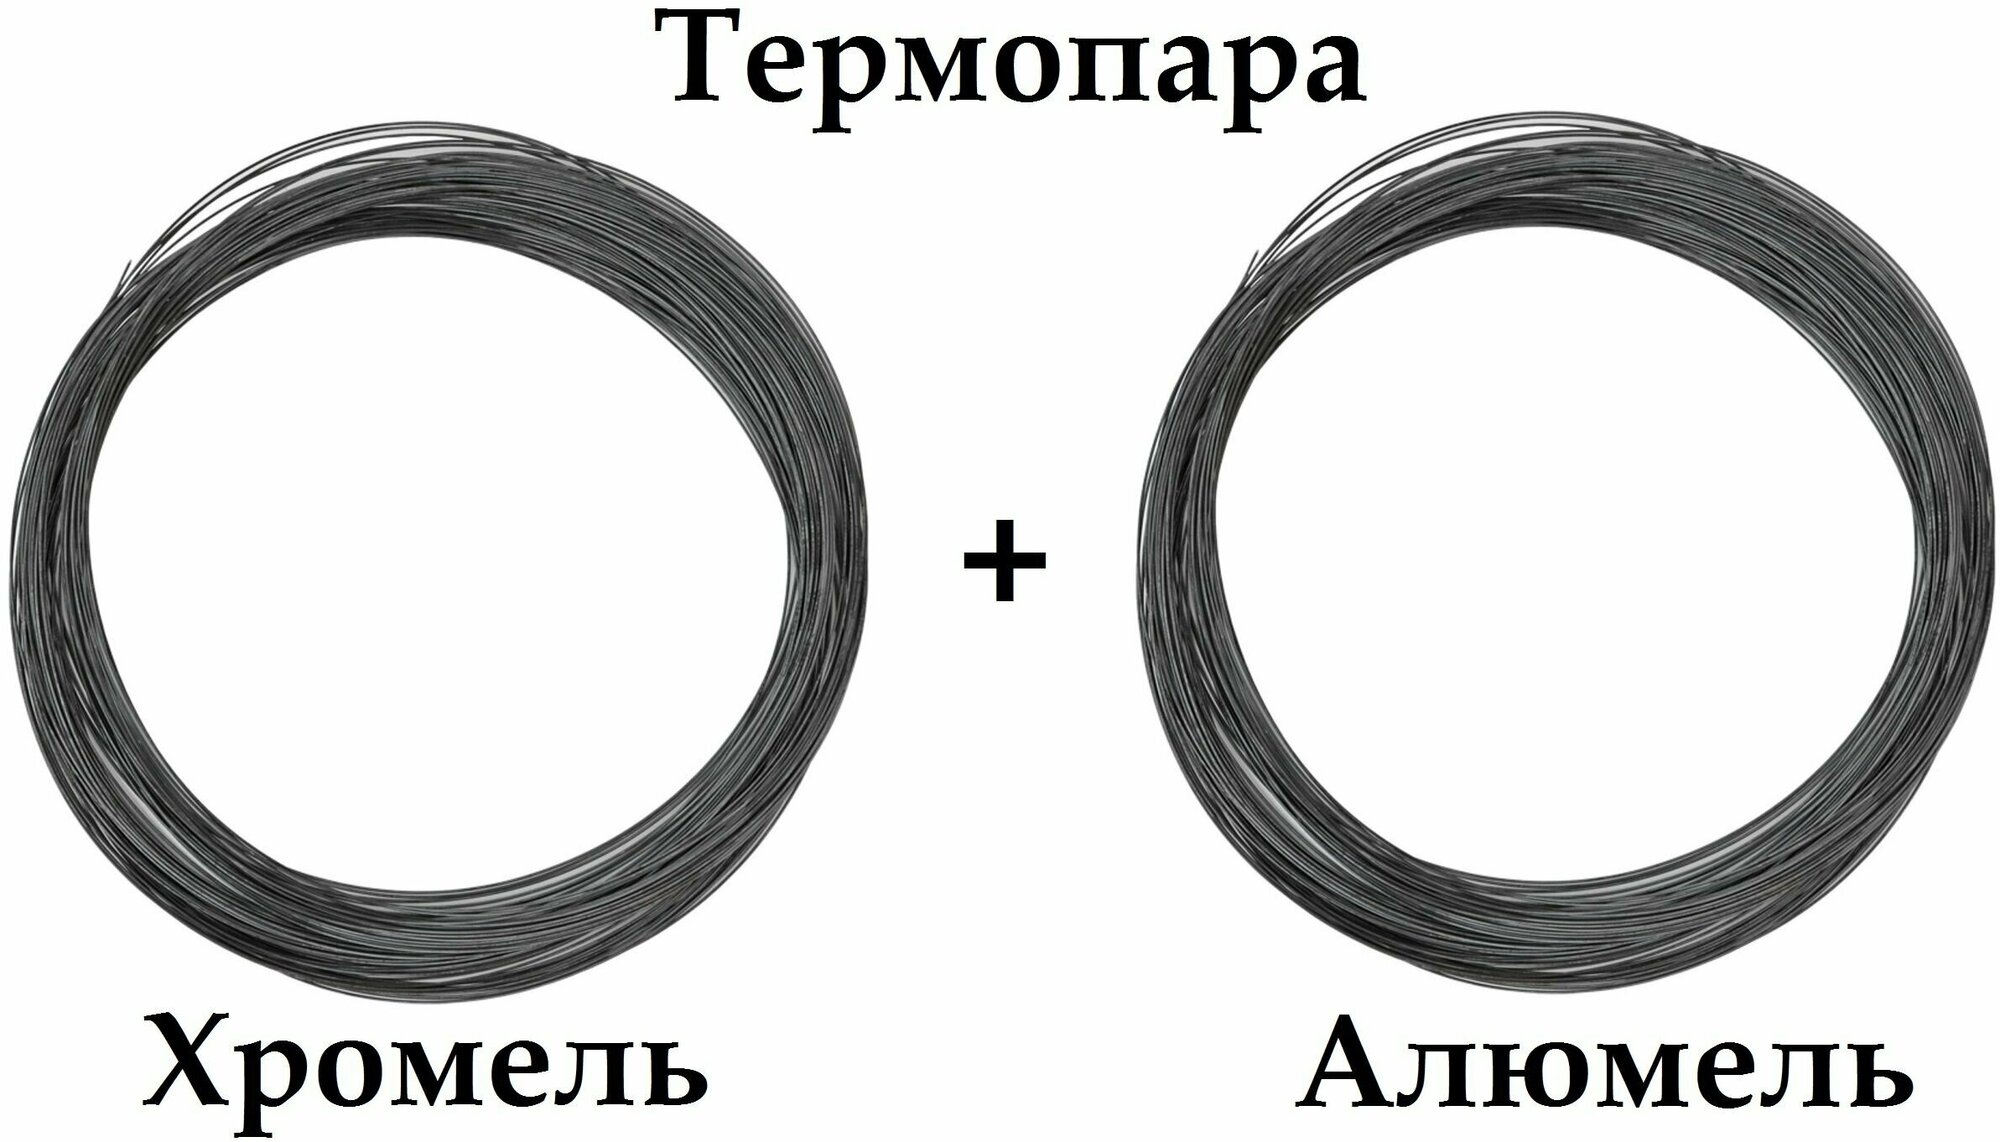 Термопара Хромель НХ9,5 + Алюмель нмцак 2-2-1, диаметр 3,2 мм -1+1 м. итого 2 метра, для производства Термоэлектродов, реостатов.